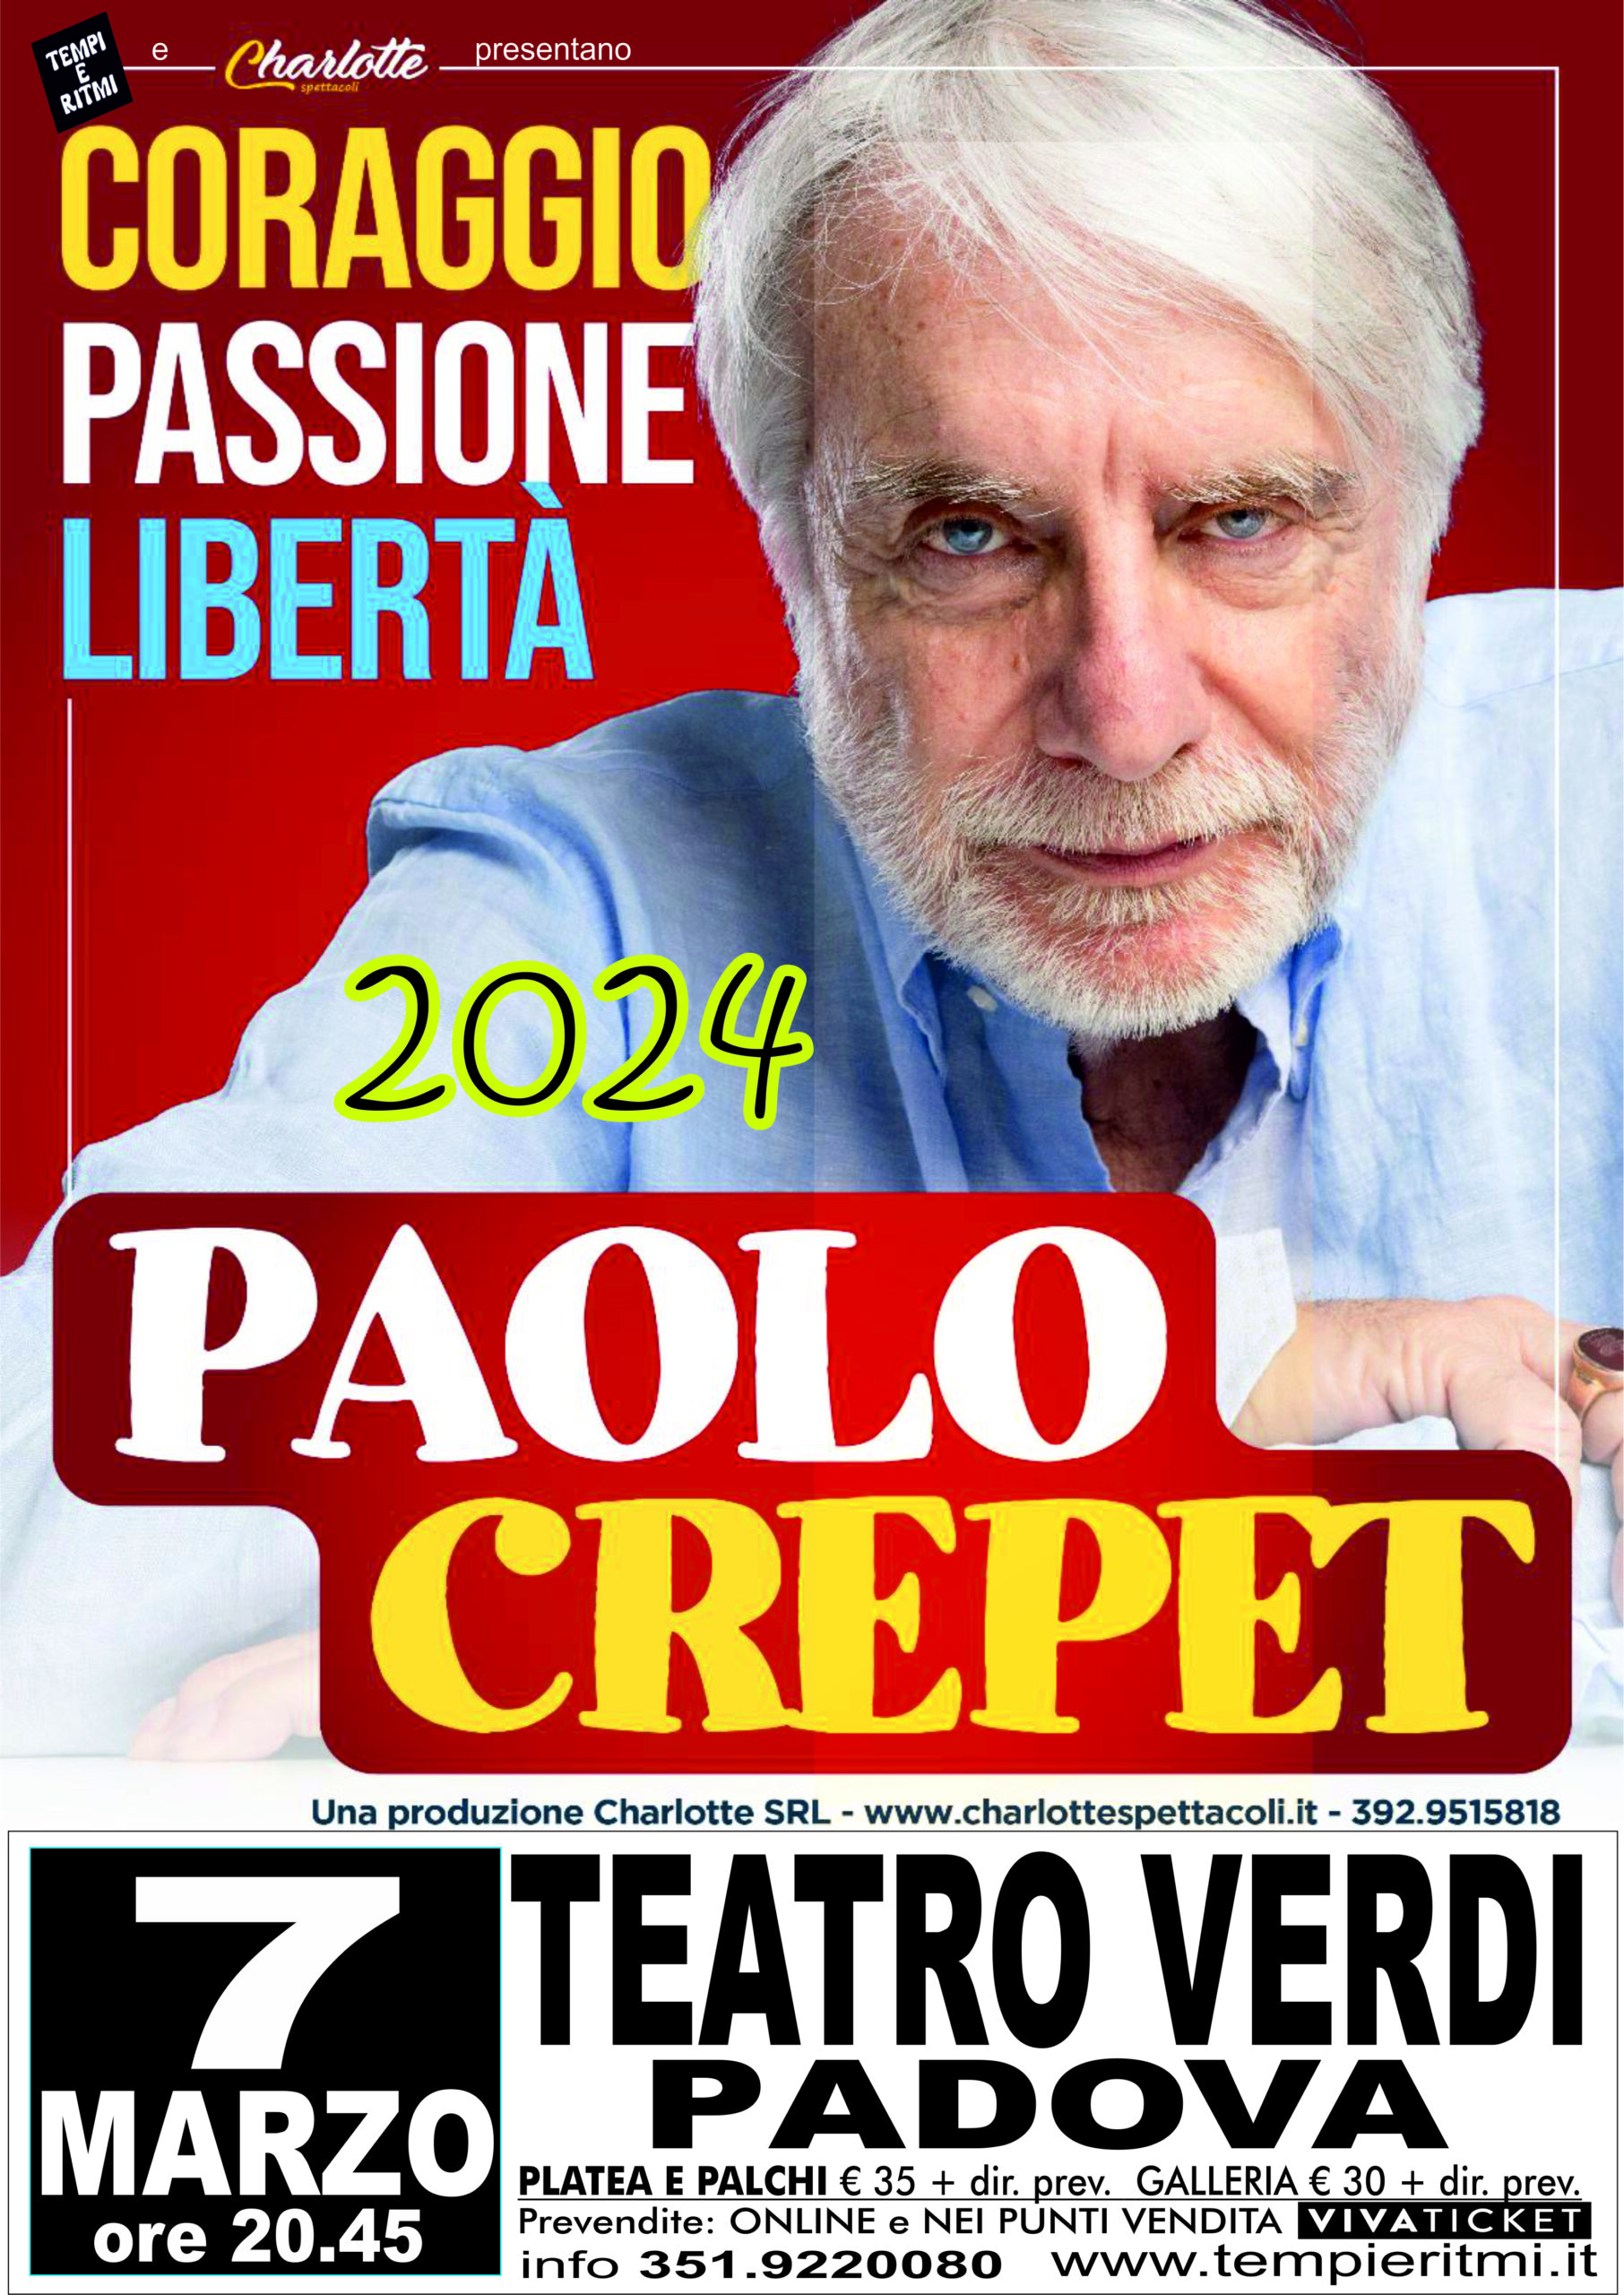 PAOLO CREPET – A MARZO 2024 A PADOVA CON “CORAGGIO.PASSIONE.LIBERTA”